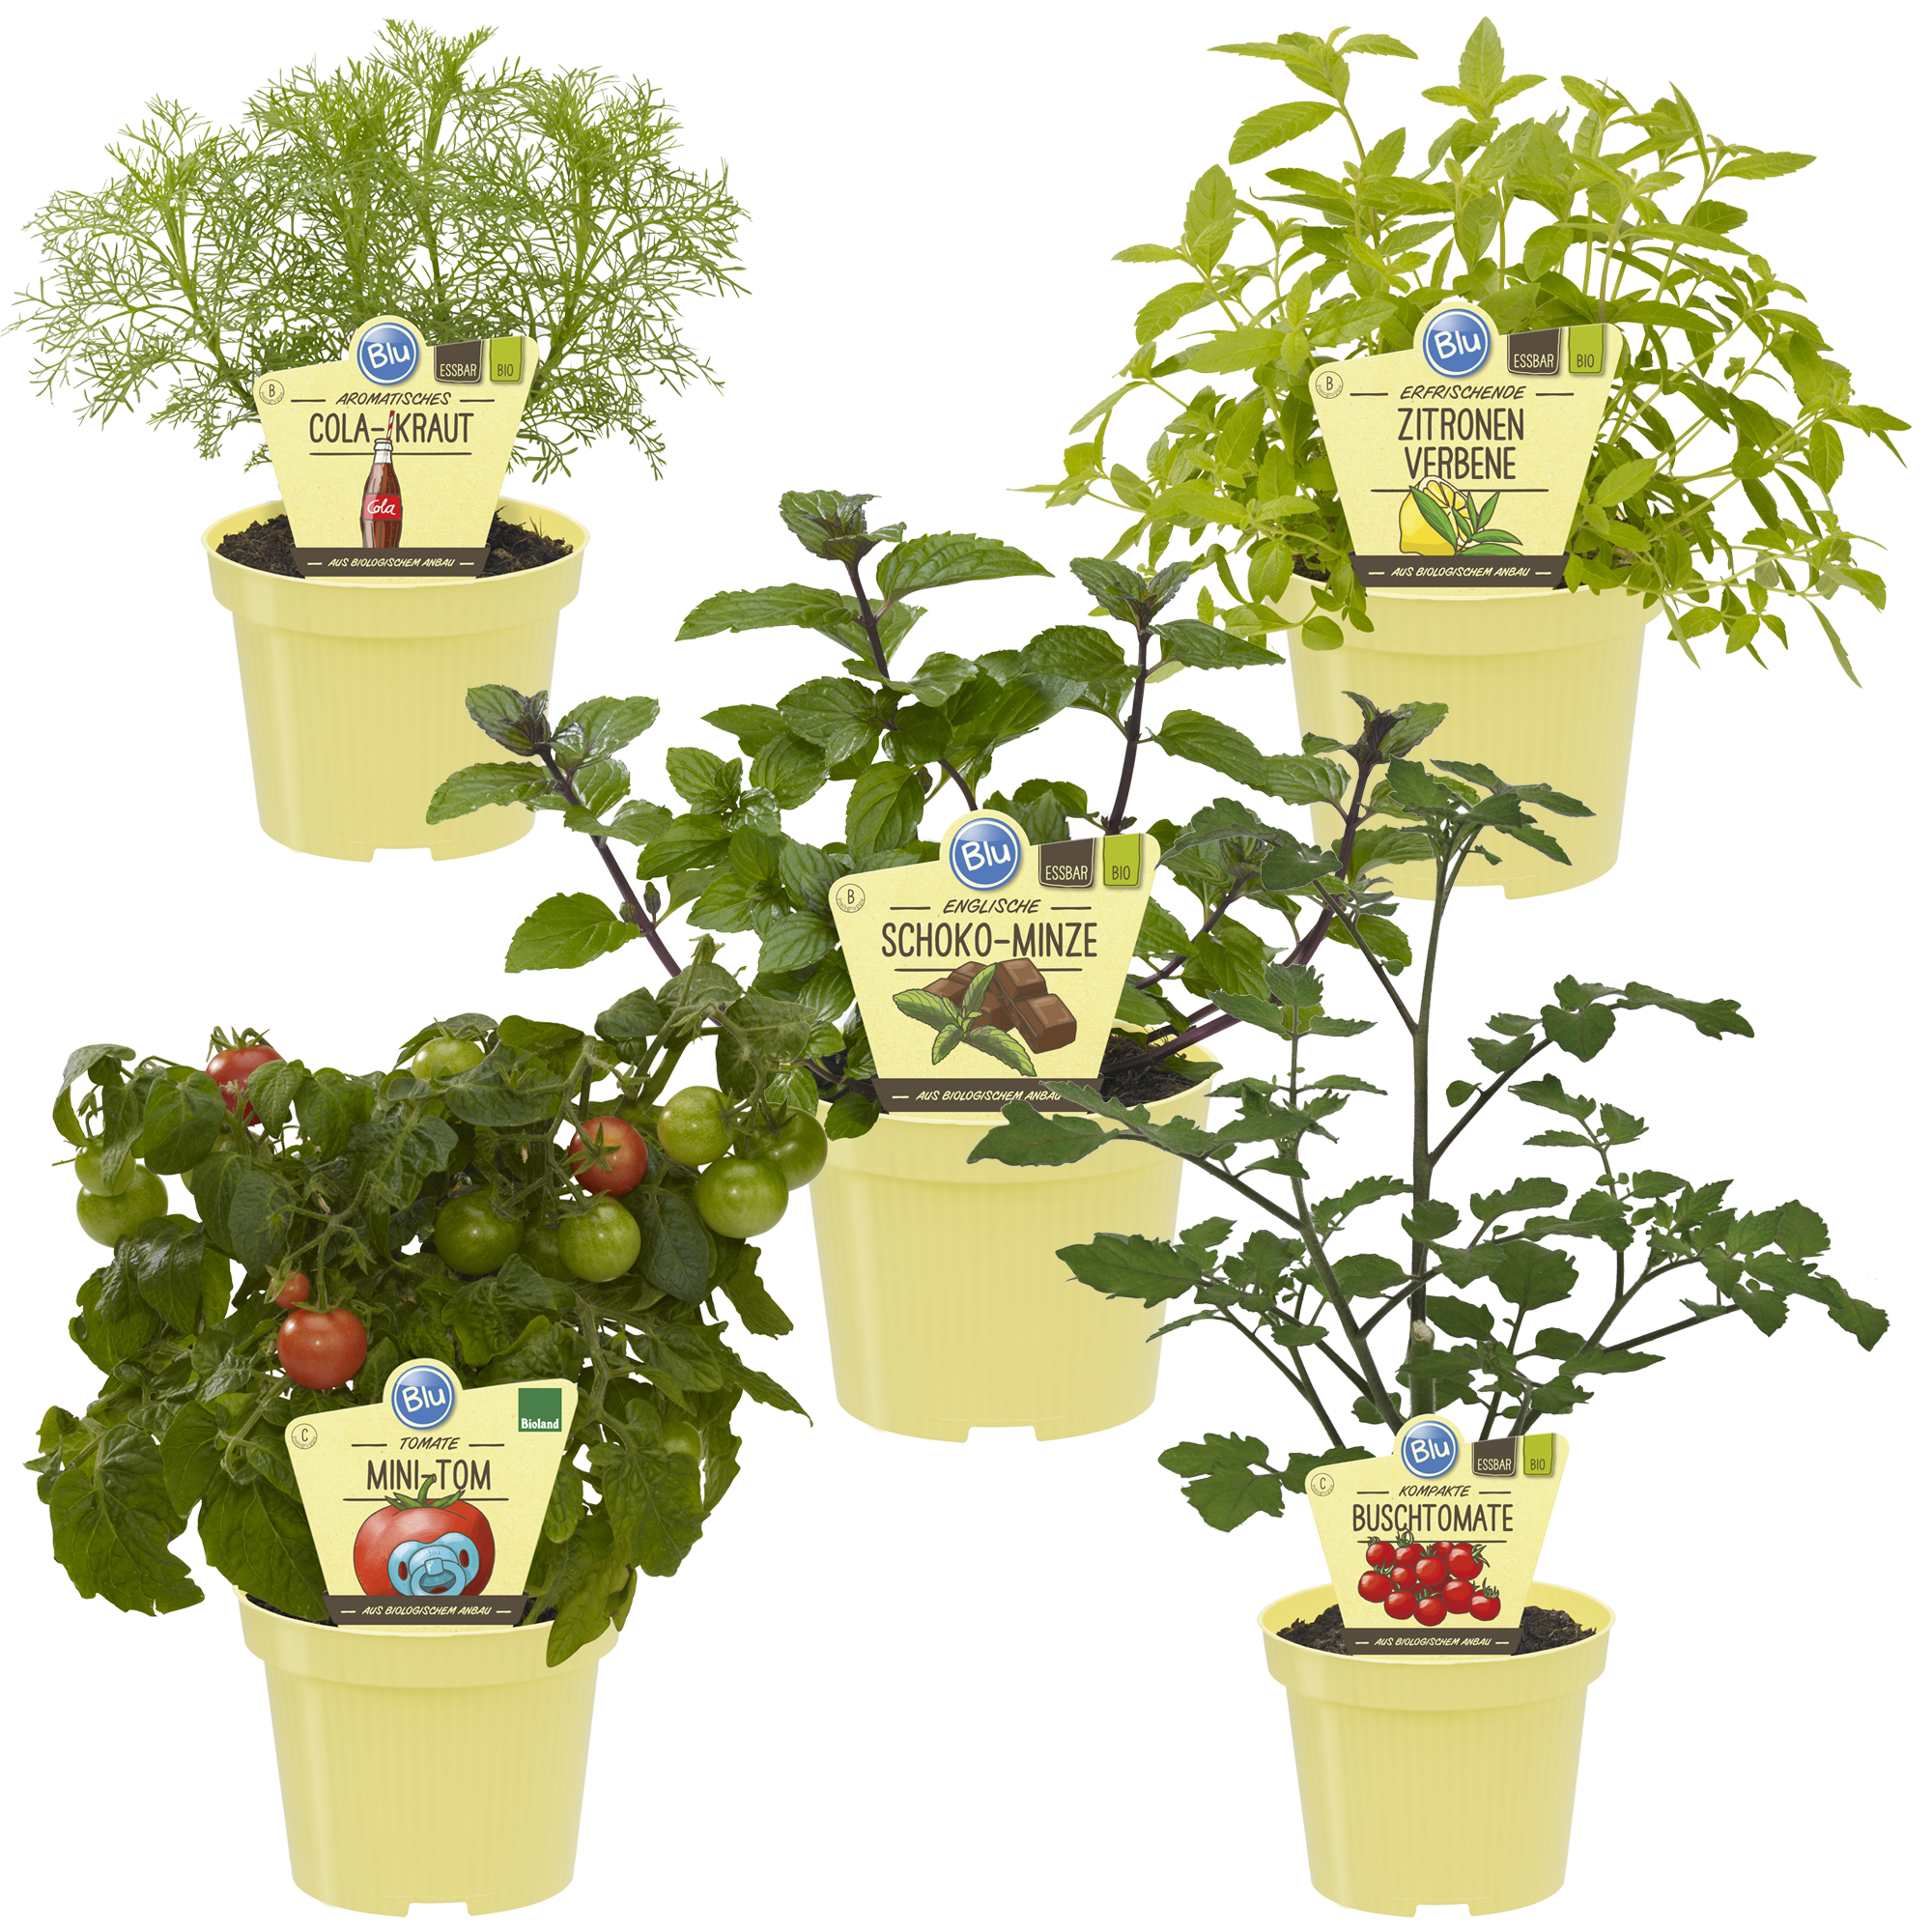 Bio-Gemüse 'Kinderbeet' 12 cm Topf, 5er-Set + product picture